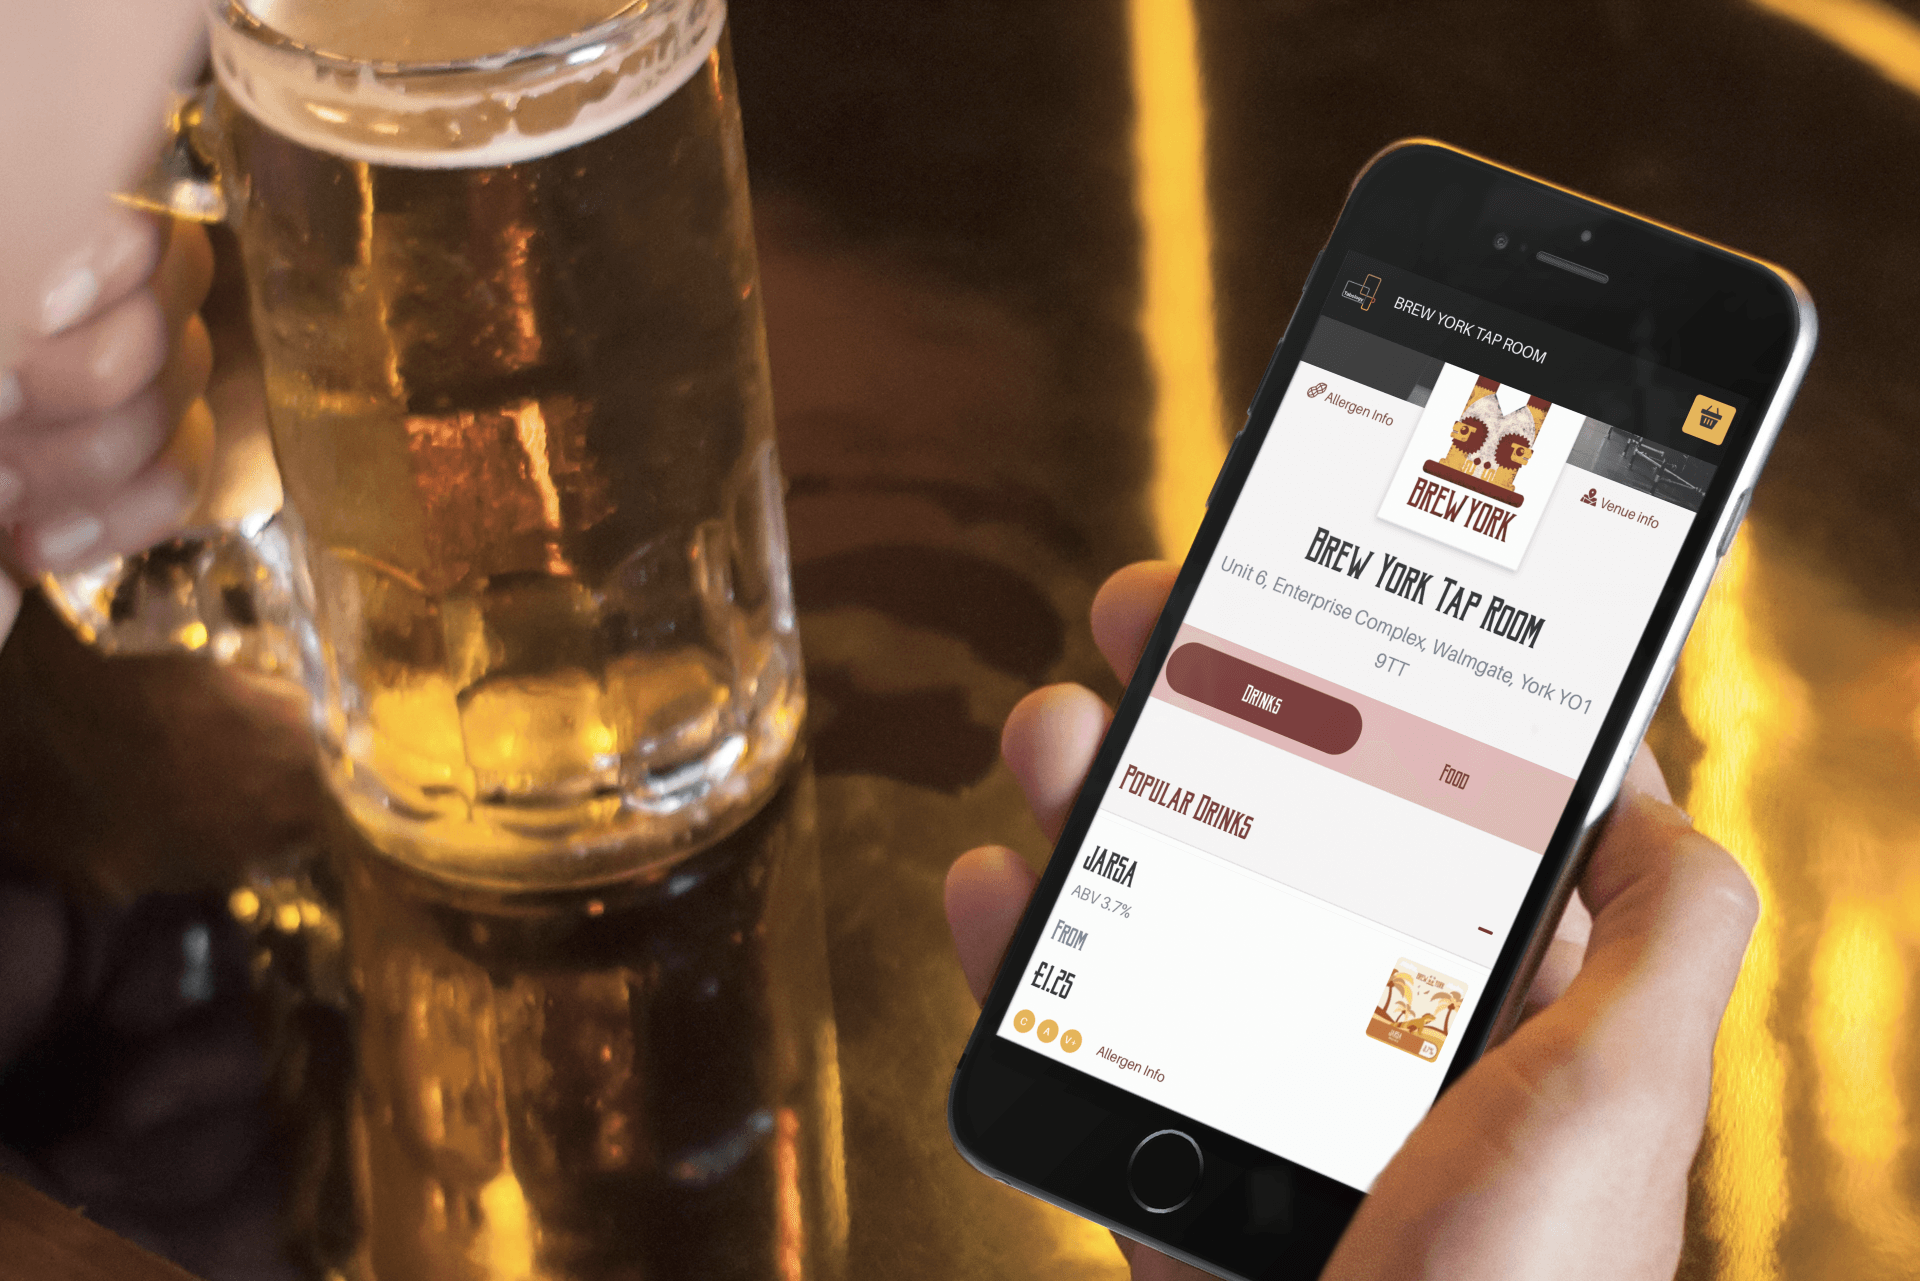 Food & drink ordering app, in bar